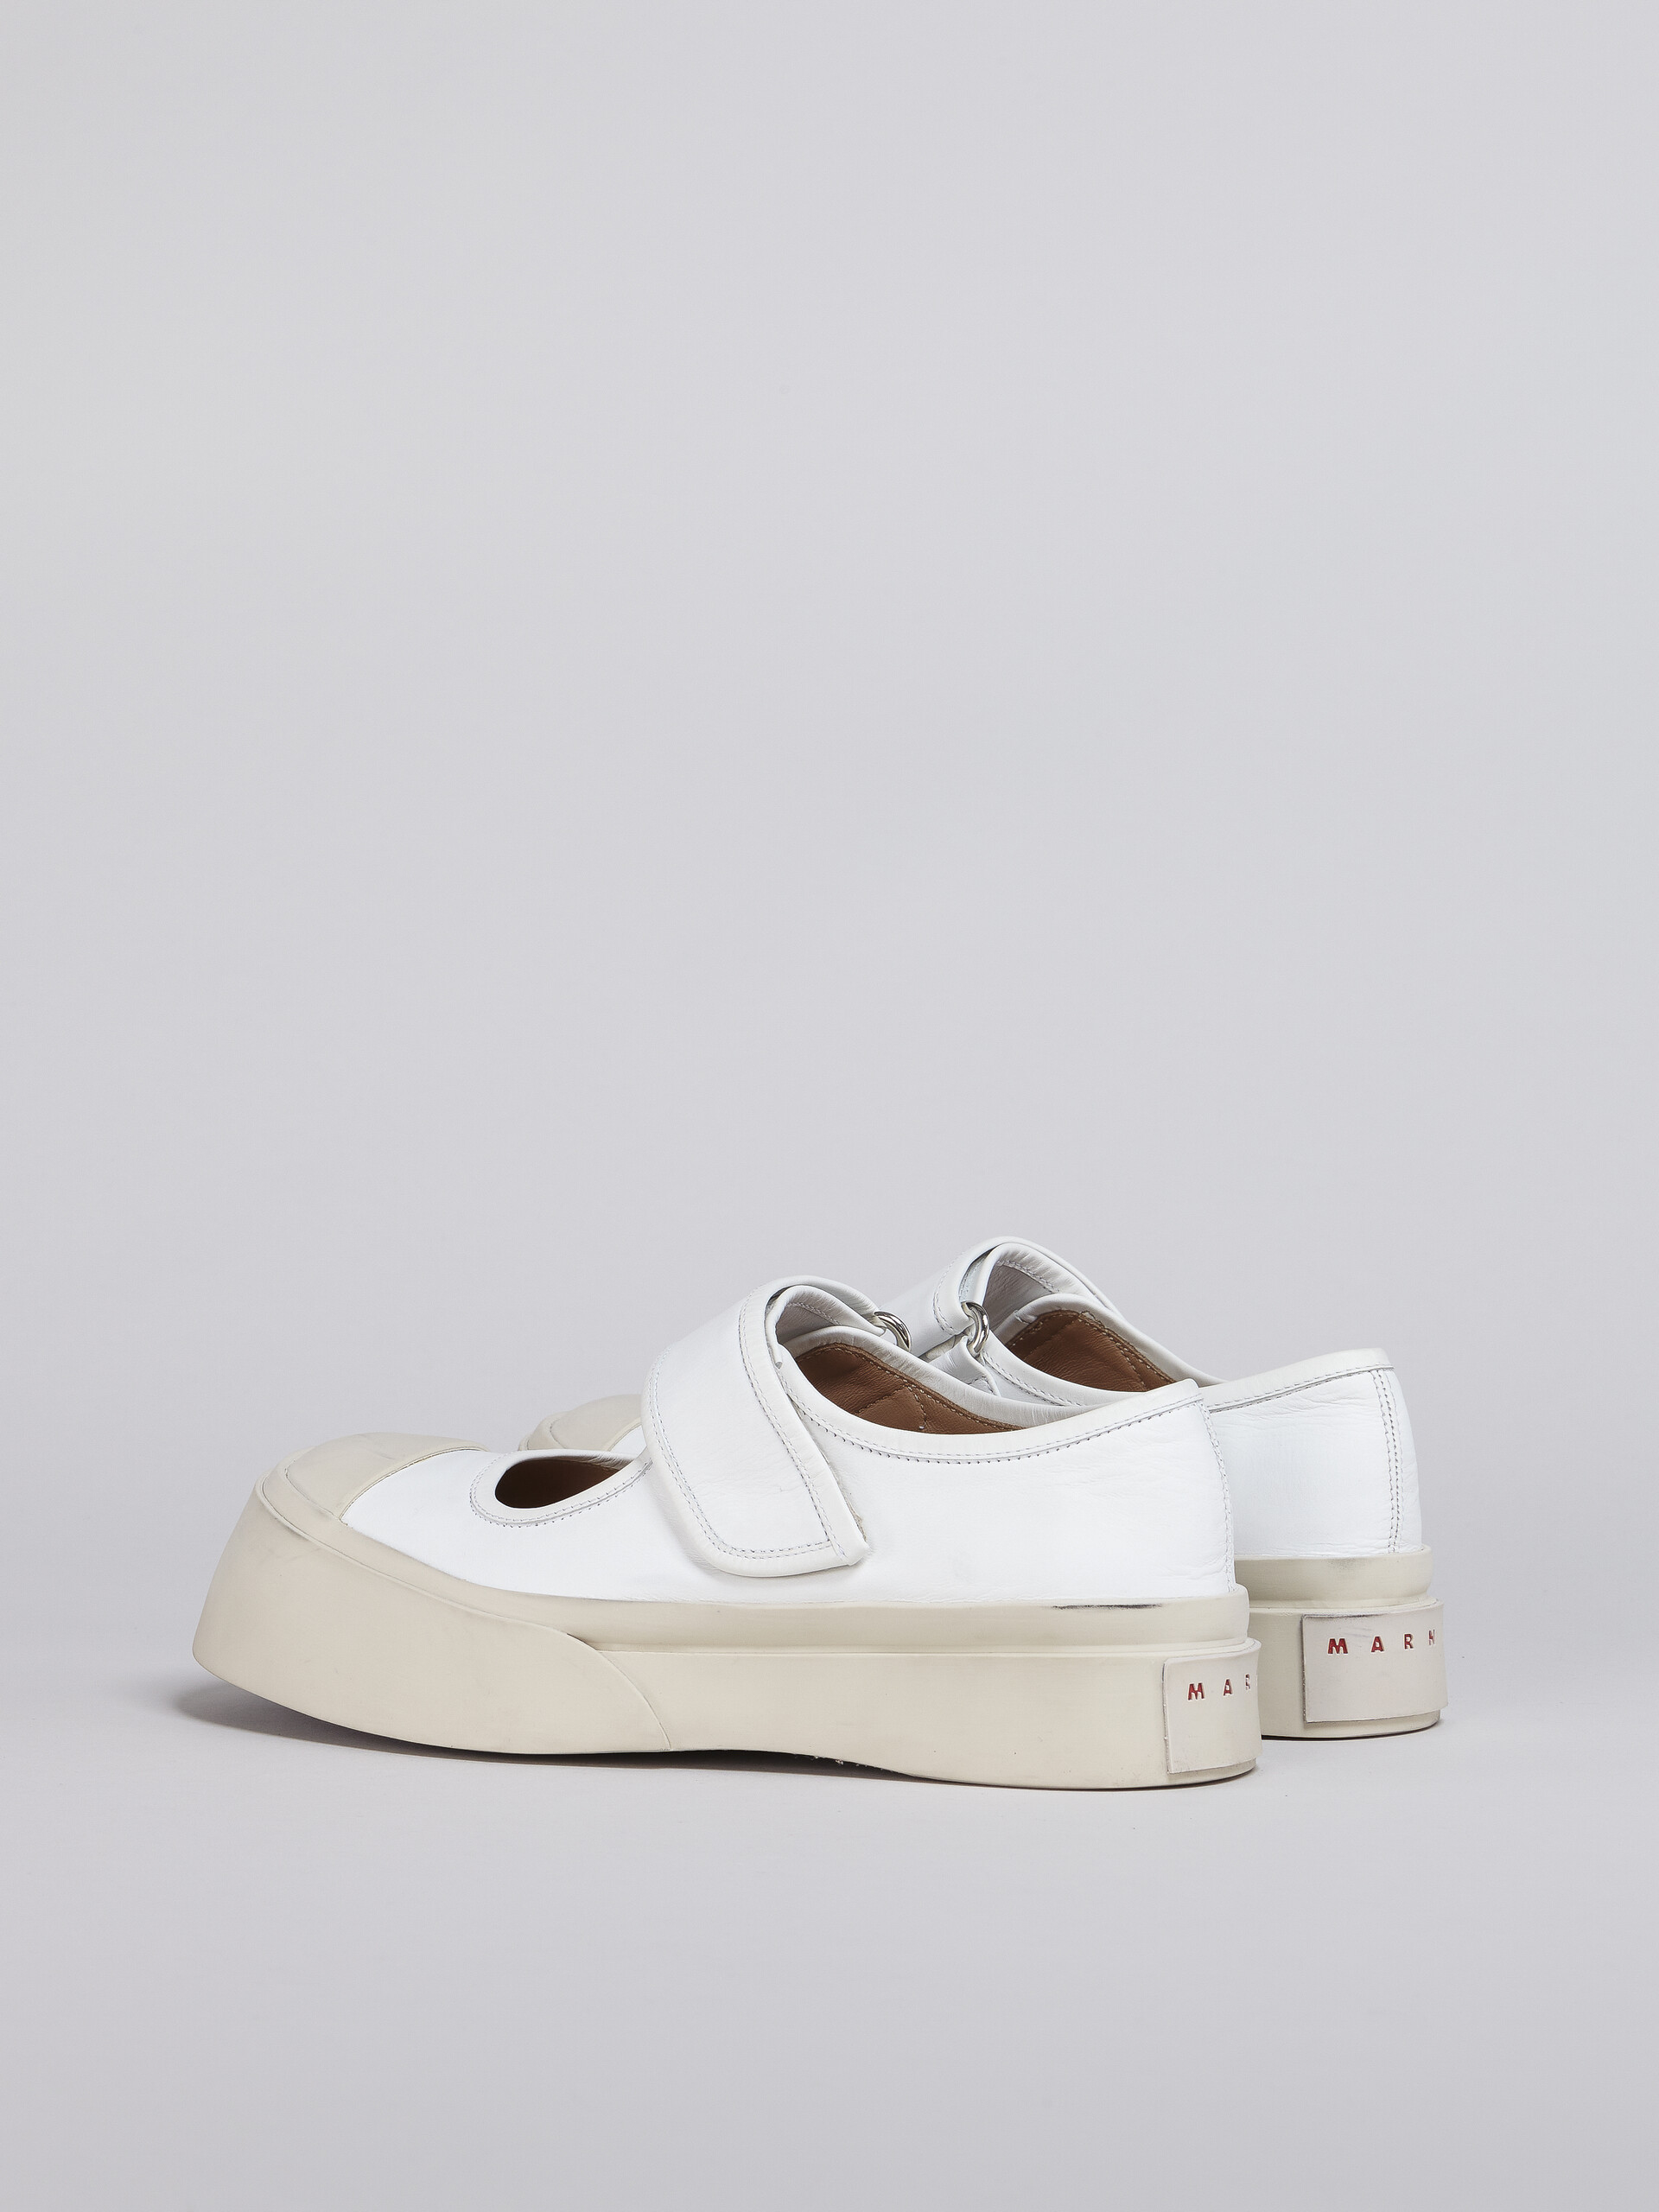 Zapatilla Mary Jane de nappa blanca - Sneakers - Image 3